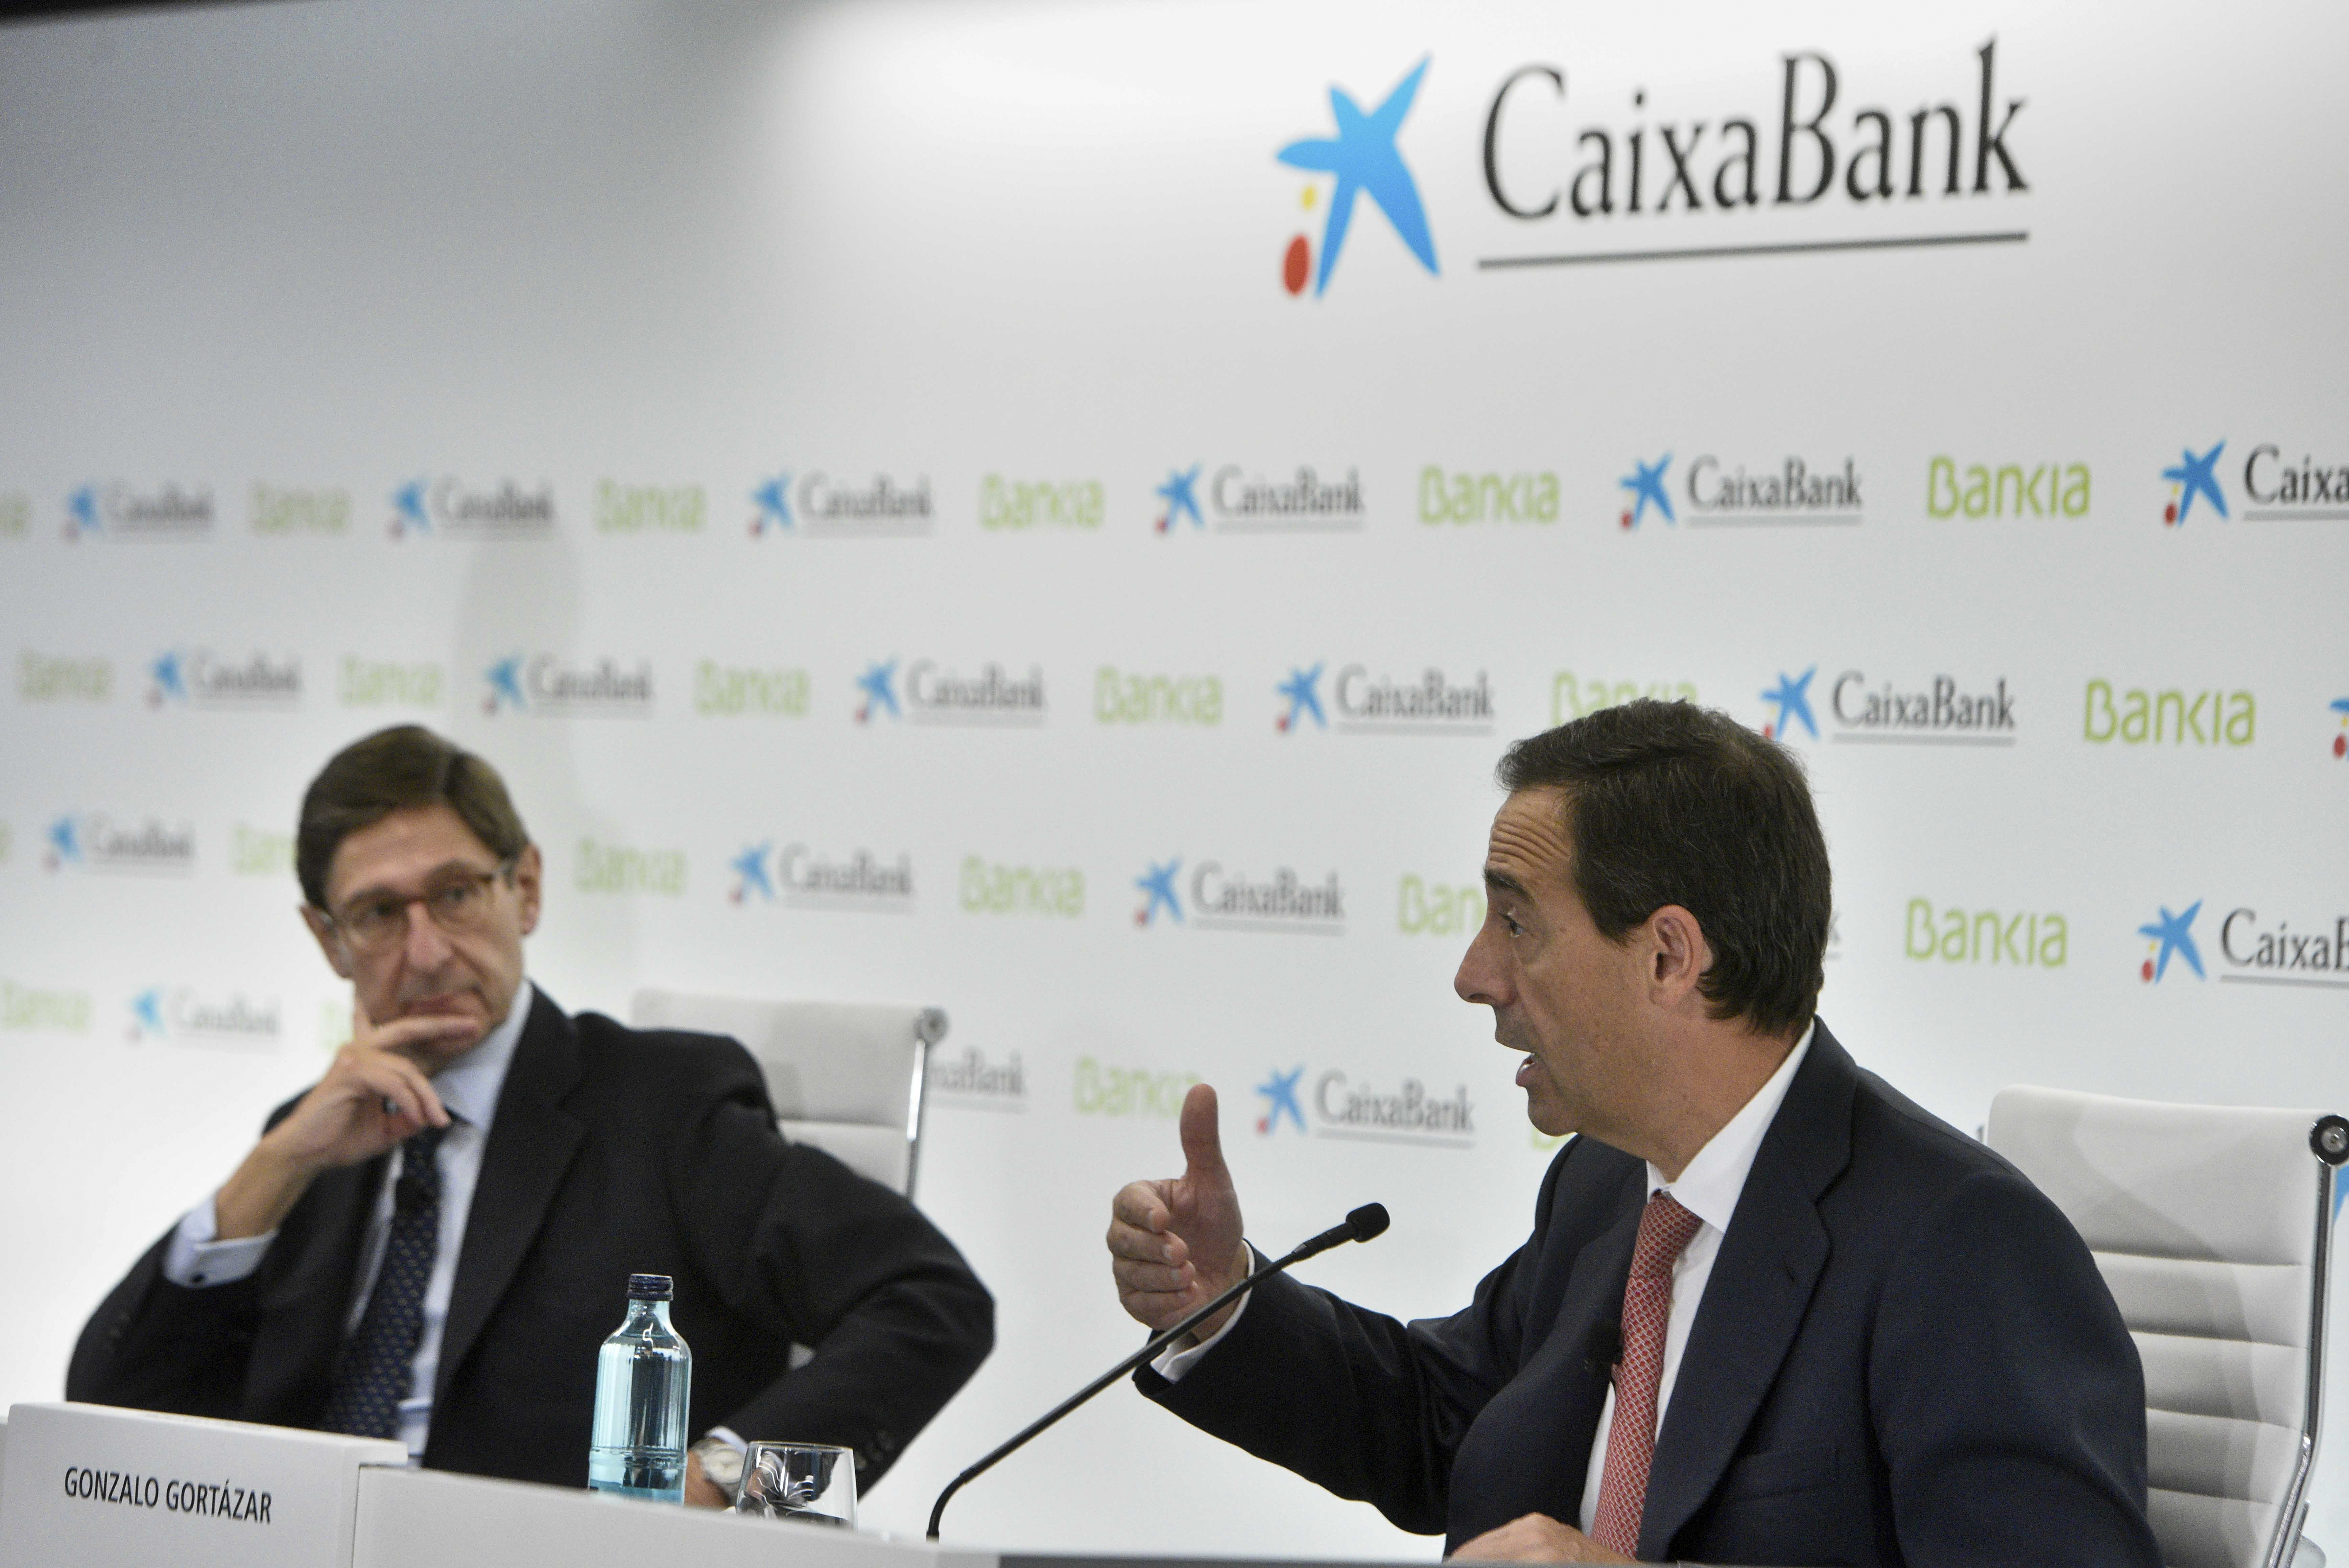 Jos Ignacio Goirigolzarri (Bankia) y Gonzalo Gortzar (CaixaBank).